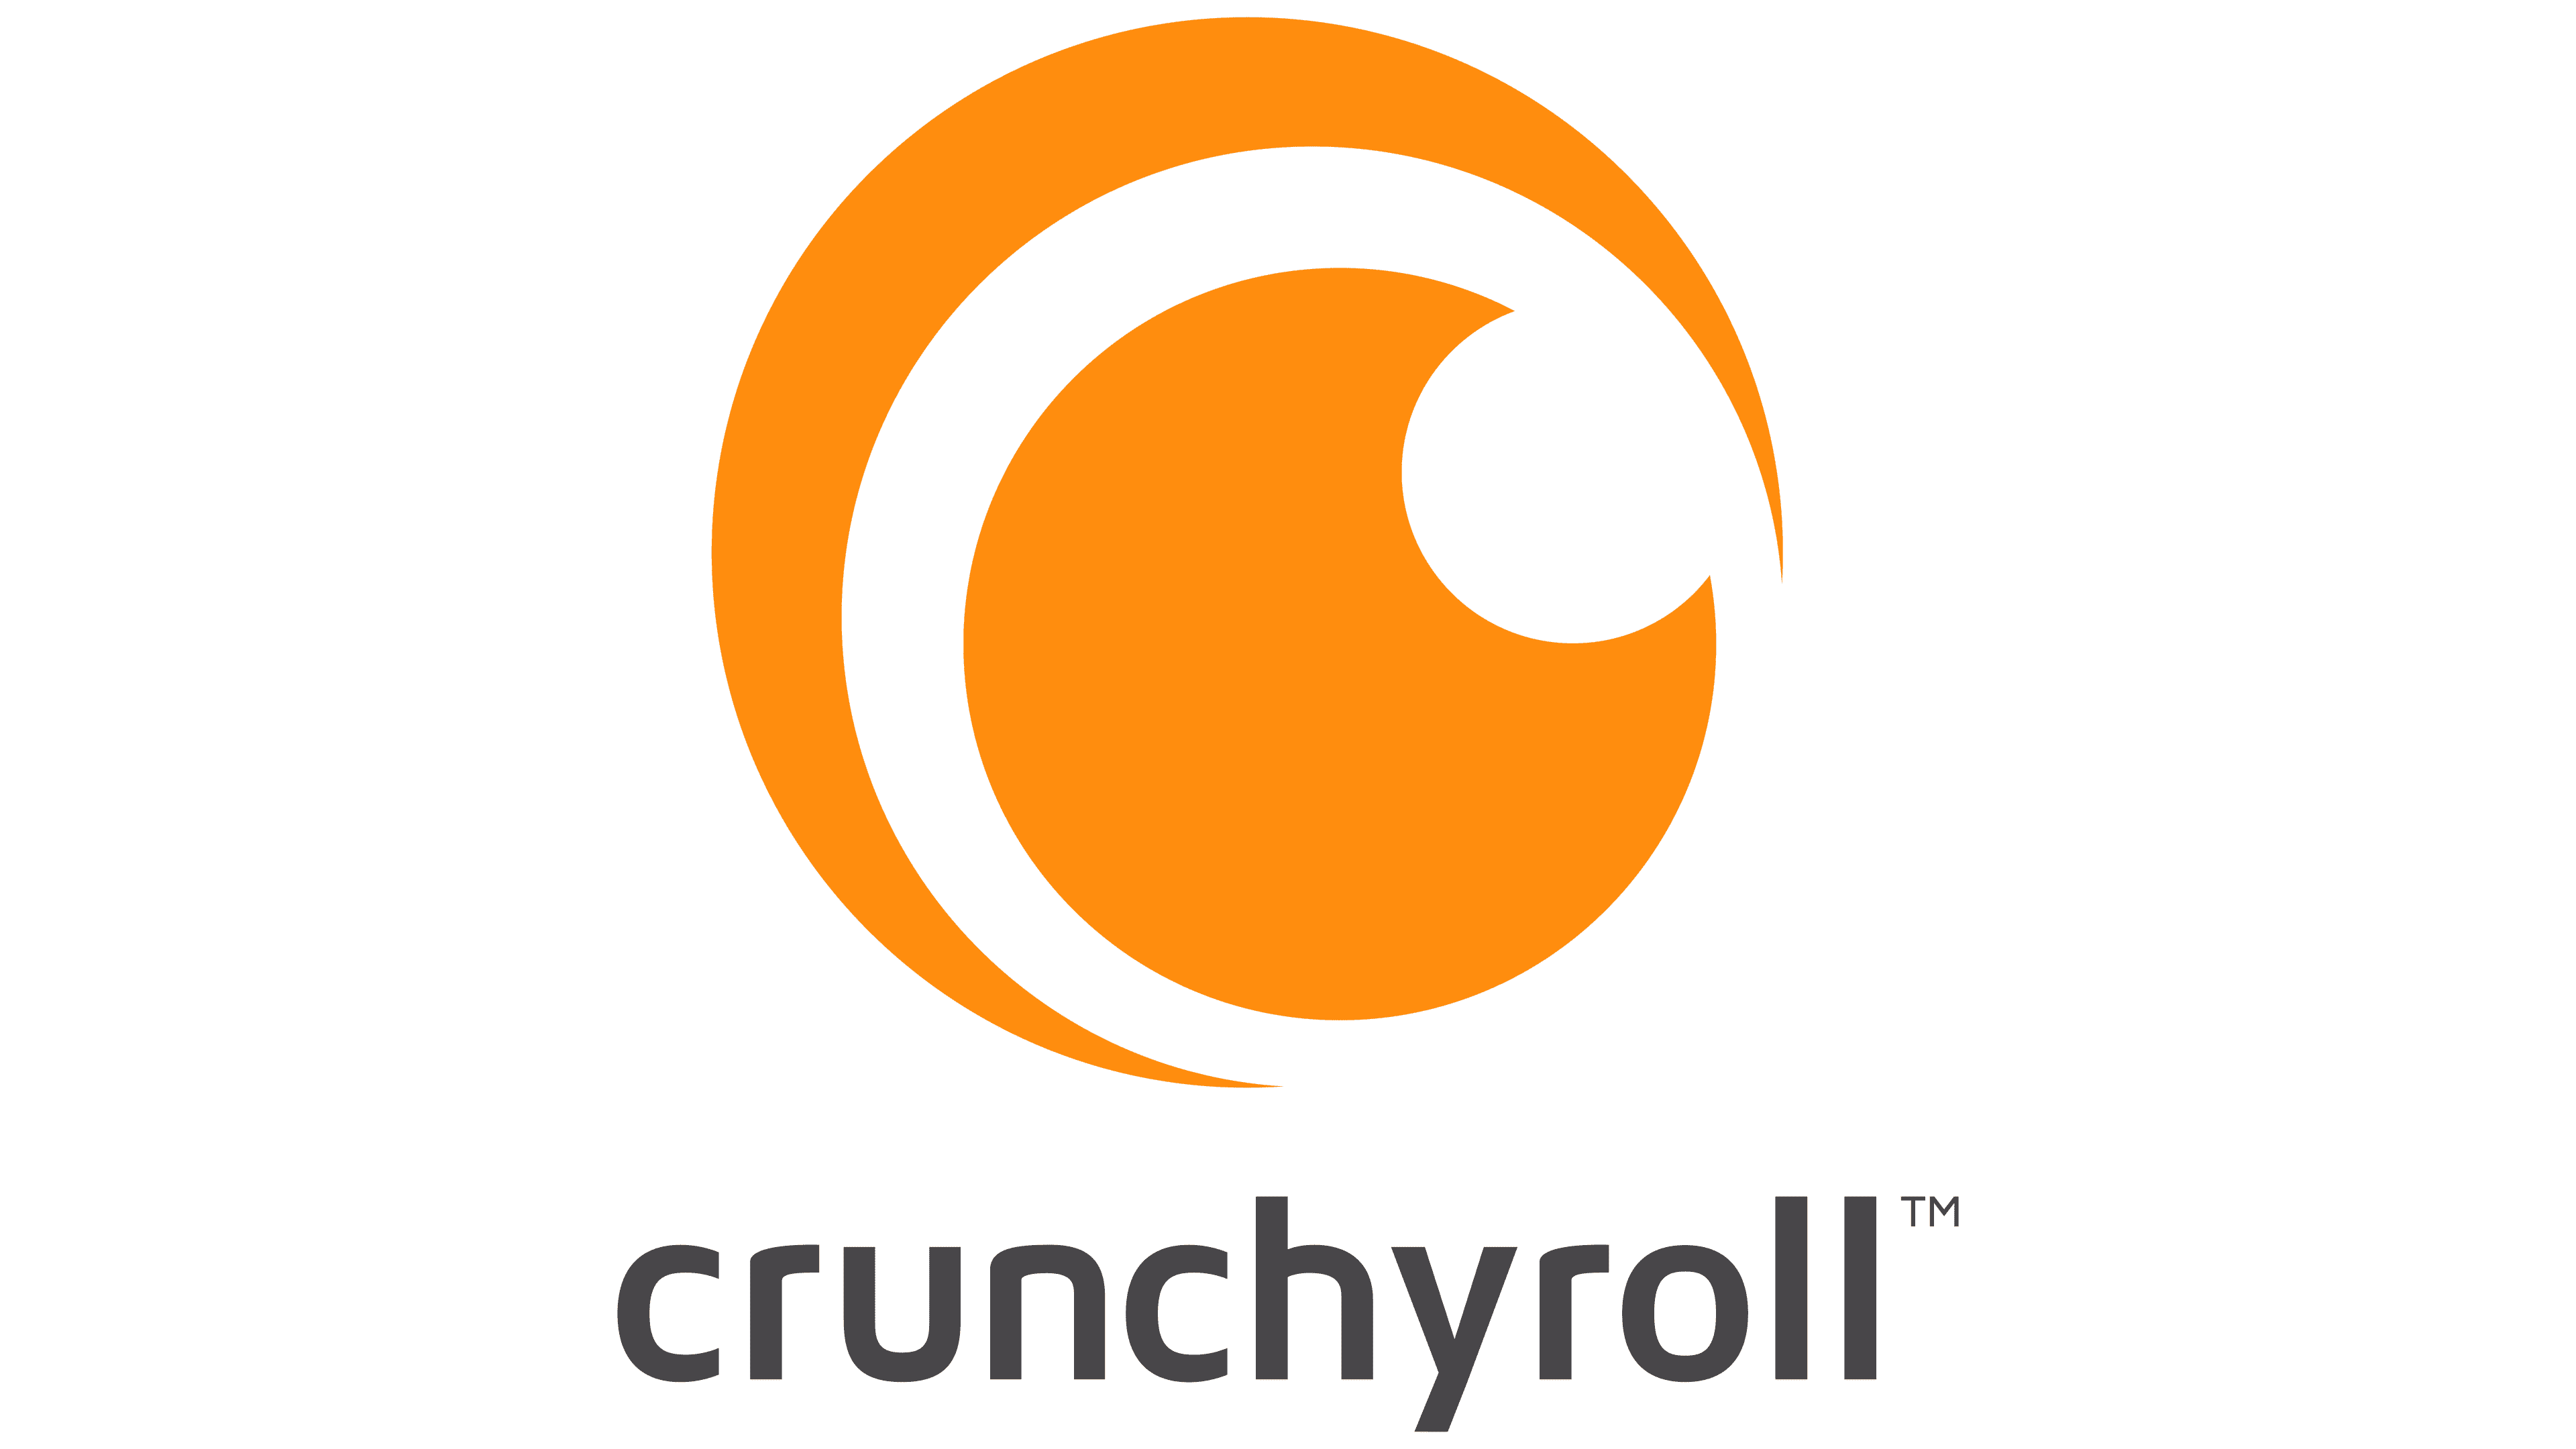 Crunchyroll brandon ooi